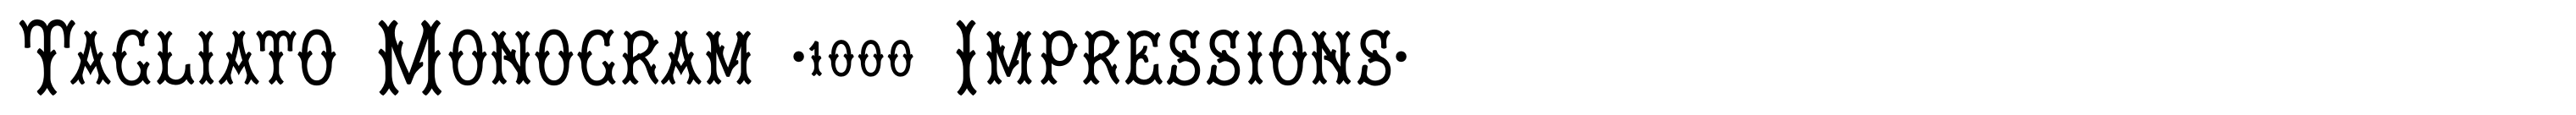 Tagliato Monogram (1000 Impressions)